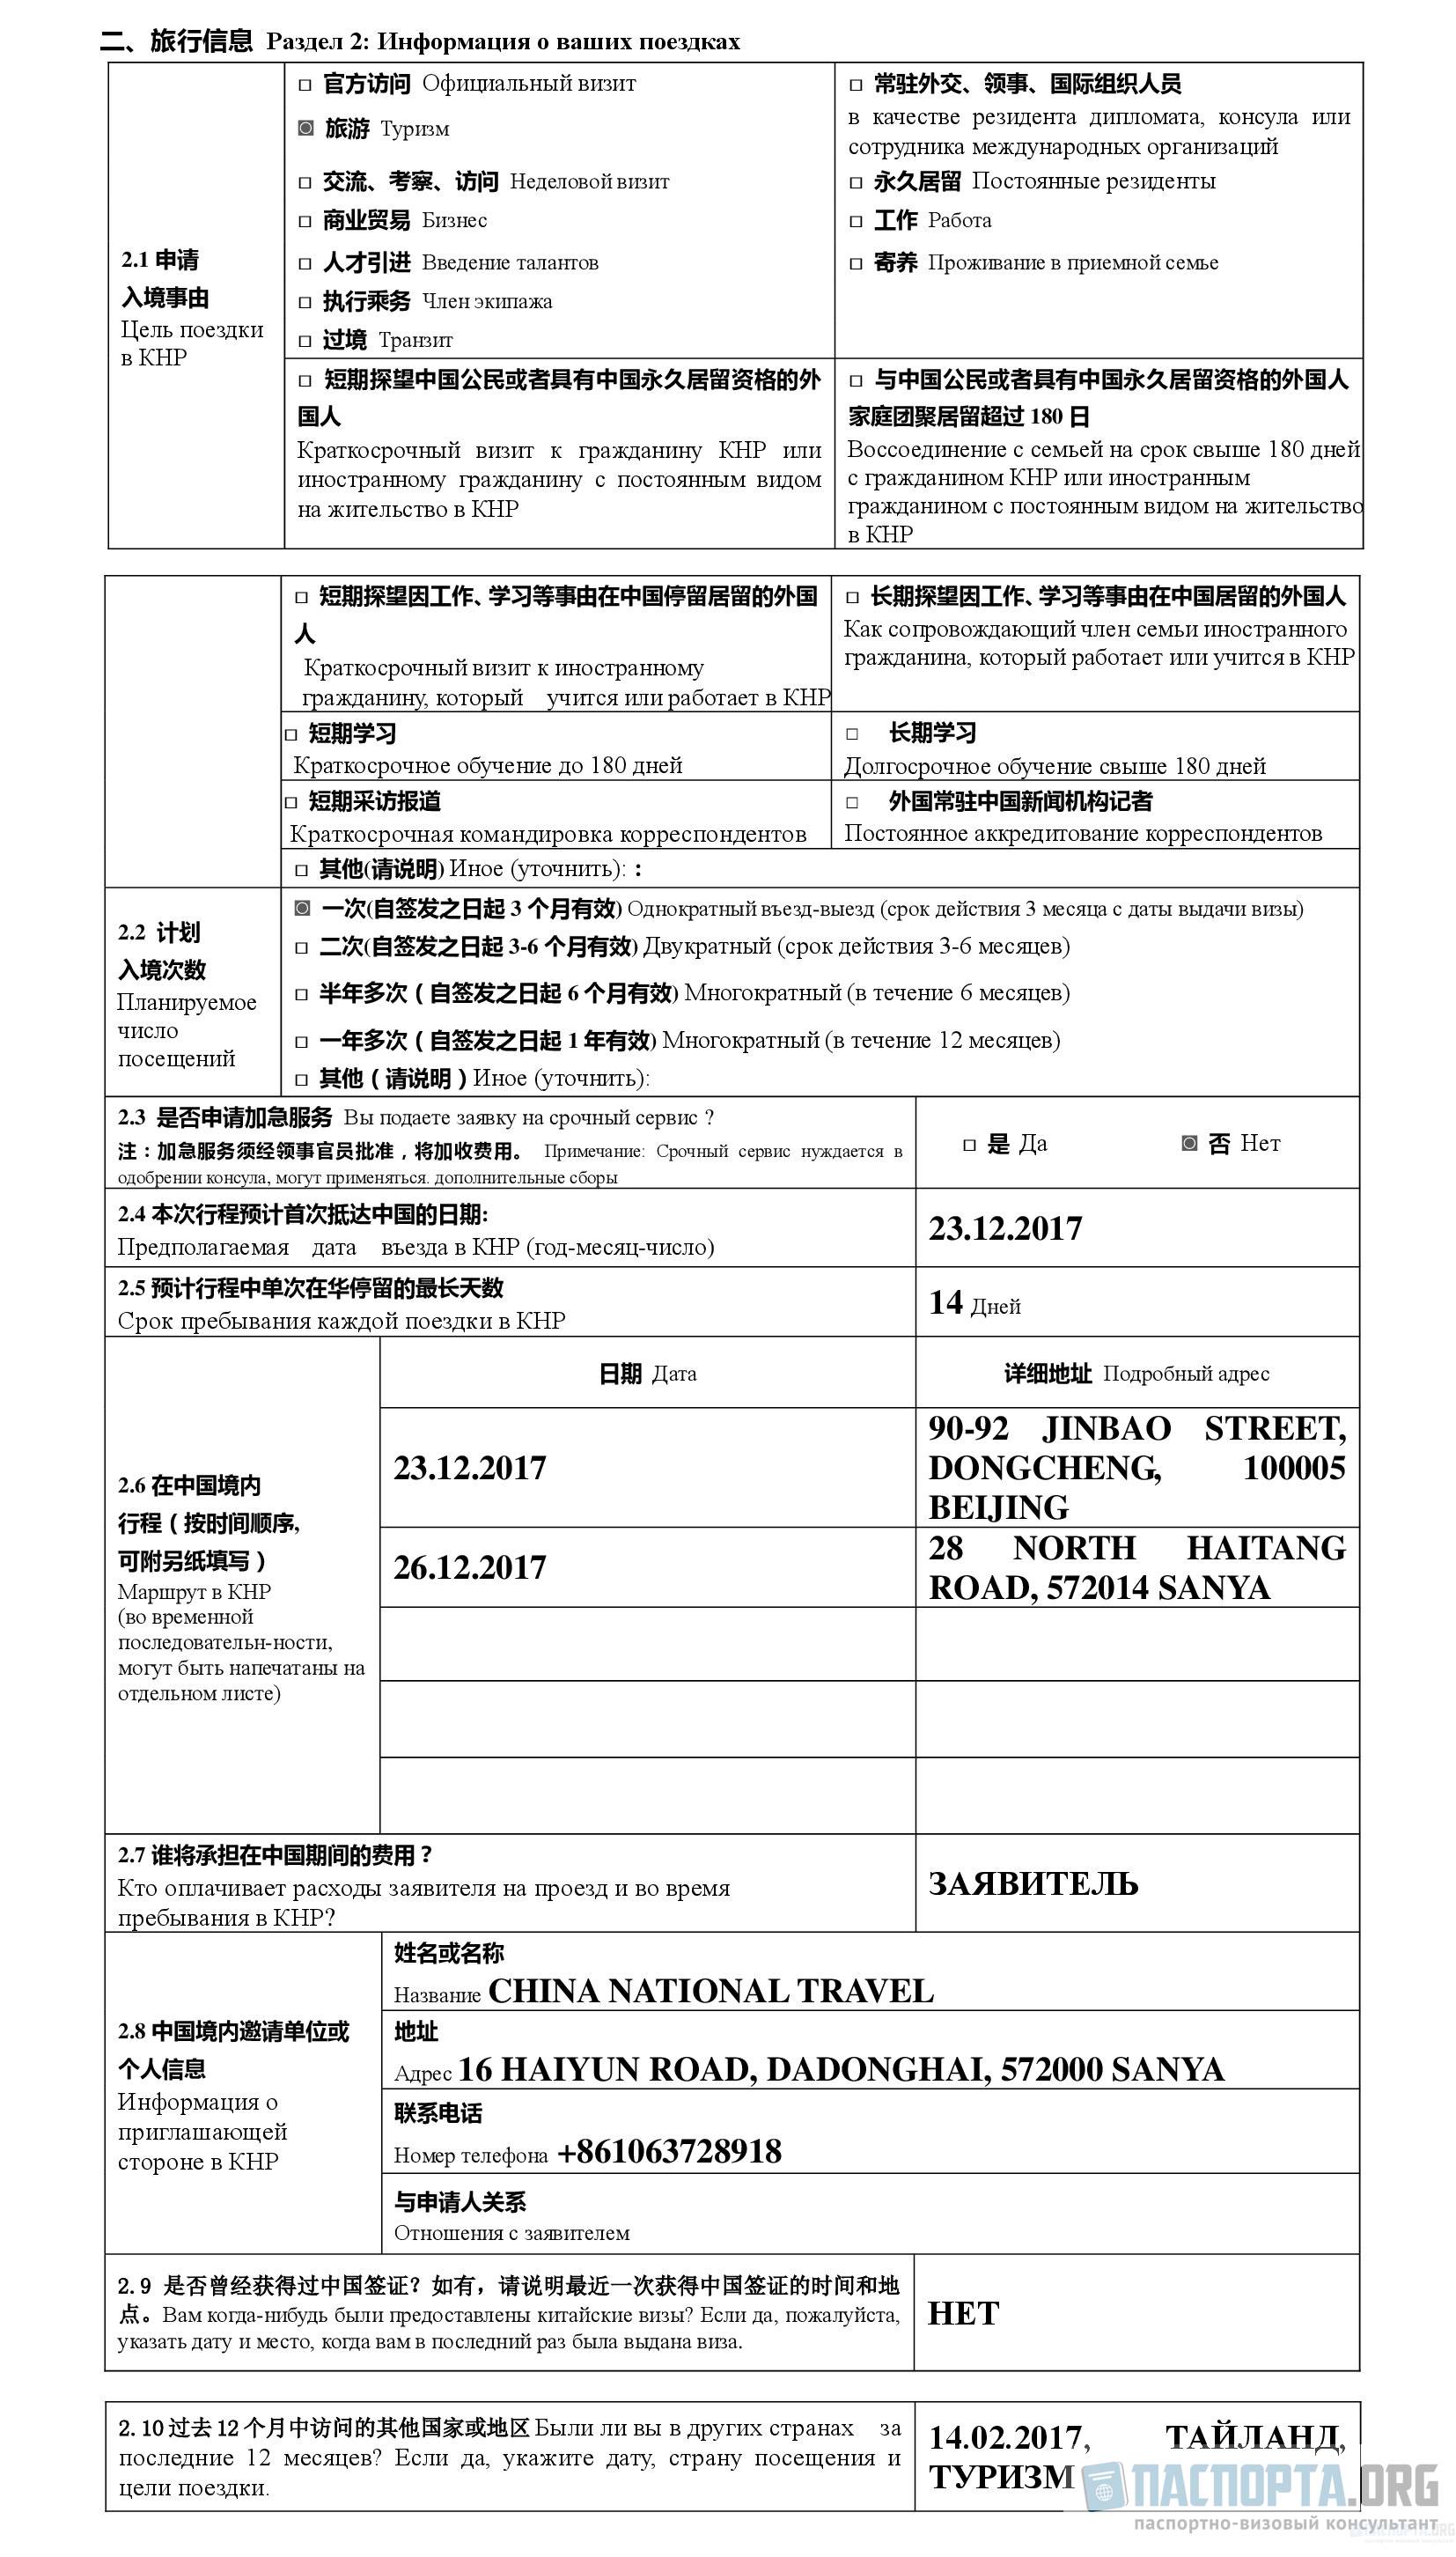 Требования к фото на визу в китай в 2021 году